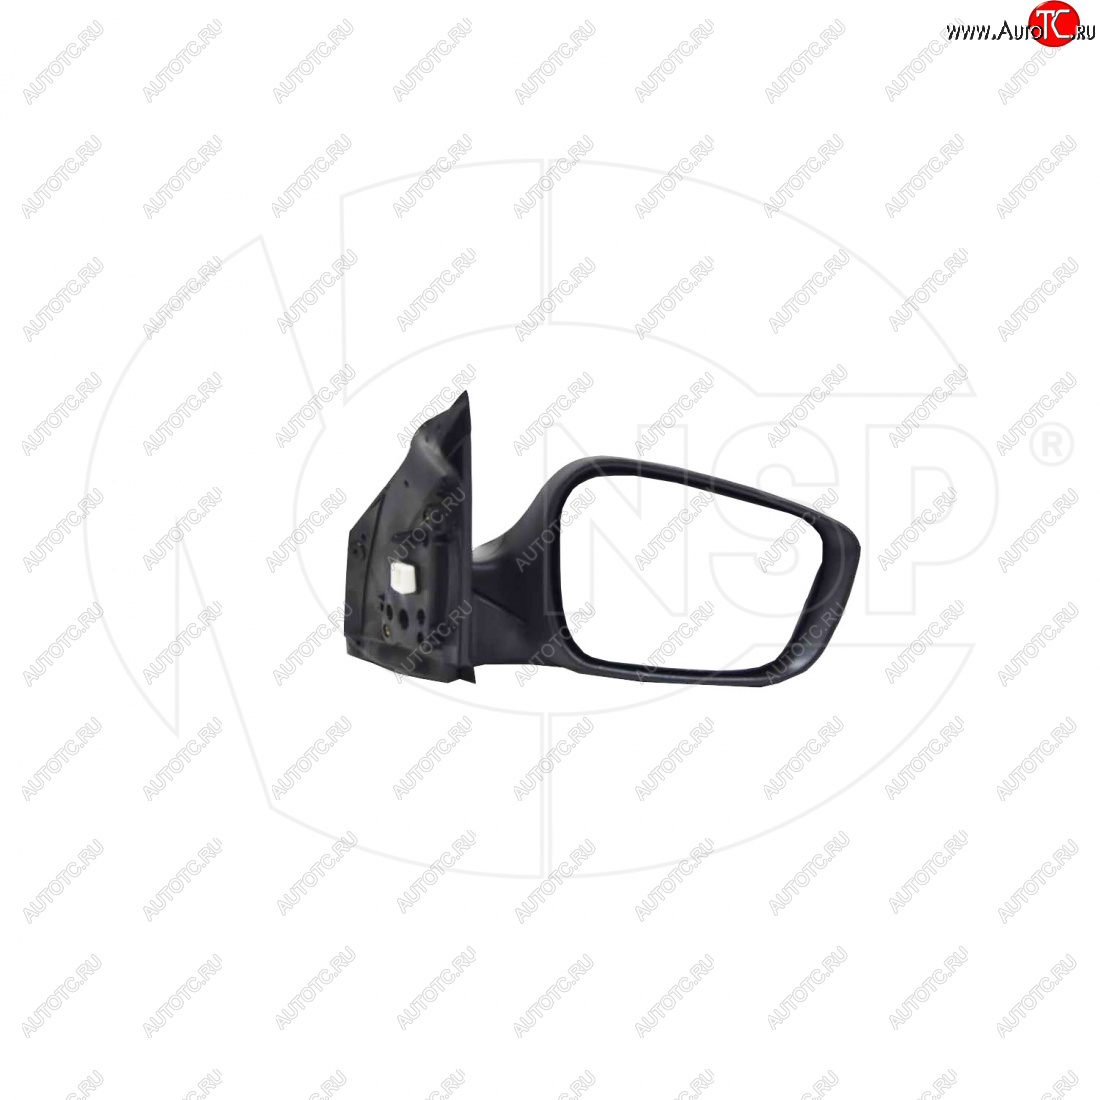 4 499 р. Зеркало зеркало заднего вида правое (регулировка, обогрев, повторитель) NSP Hyundai Solaris 1 хэтчбек RBr дорестайлинг (2010-2014) (, Неокрашенное)